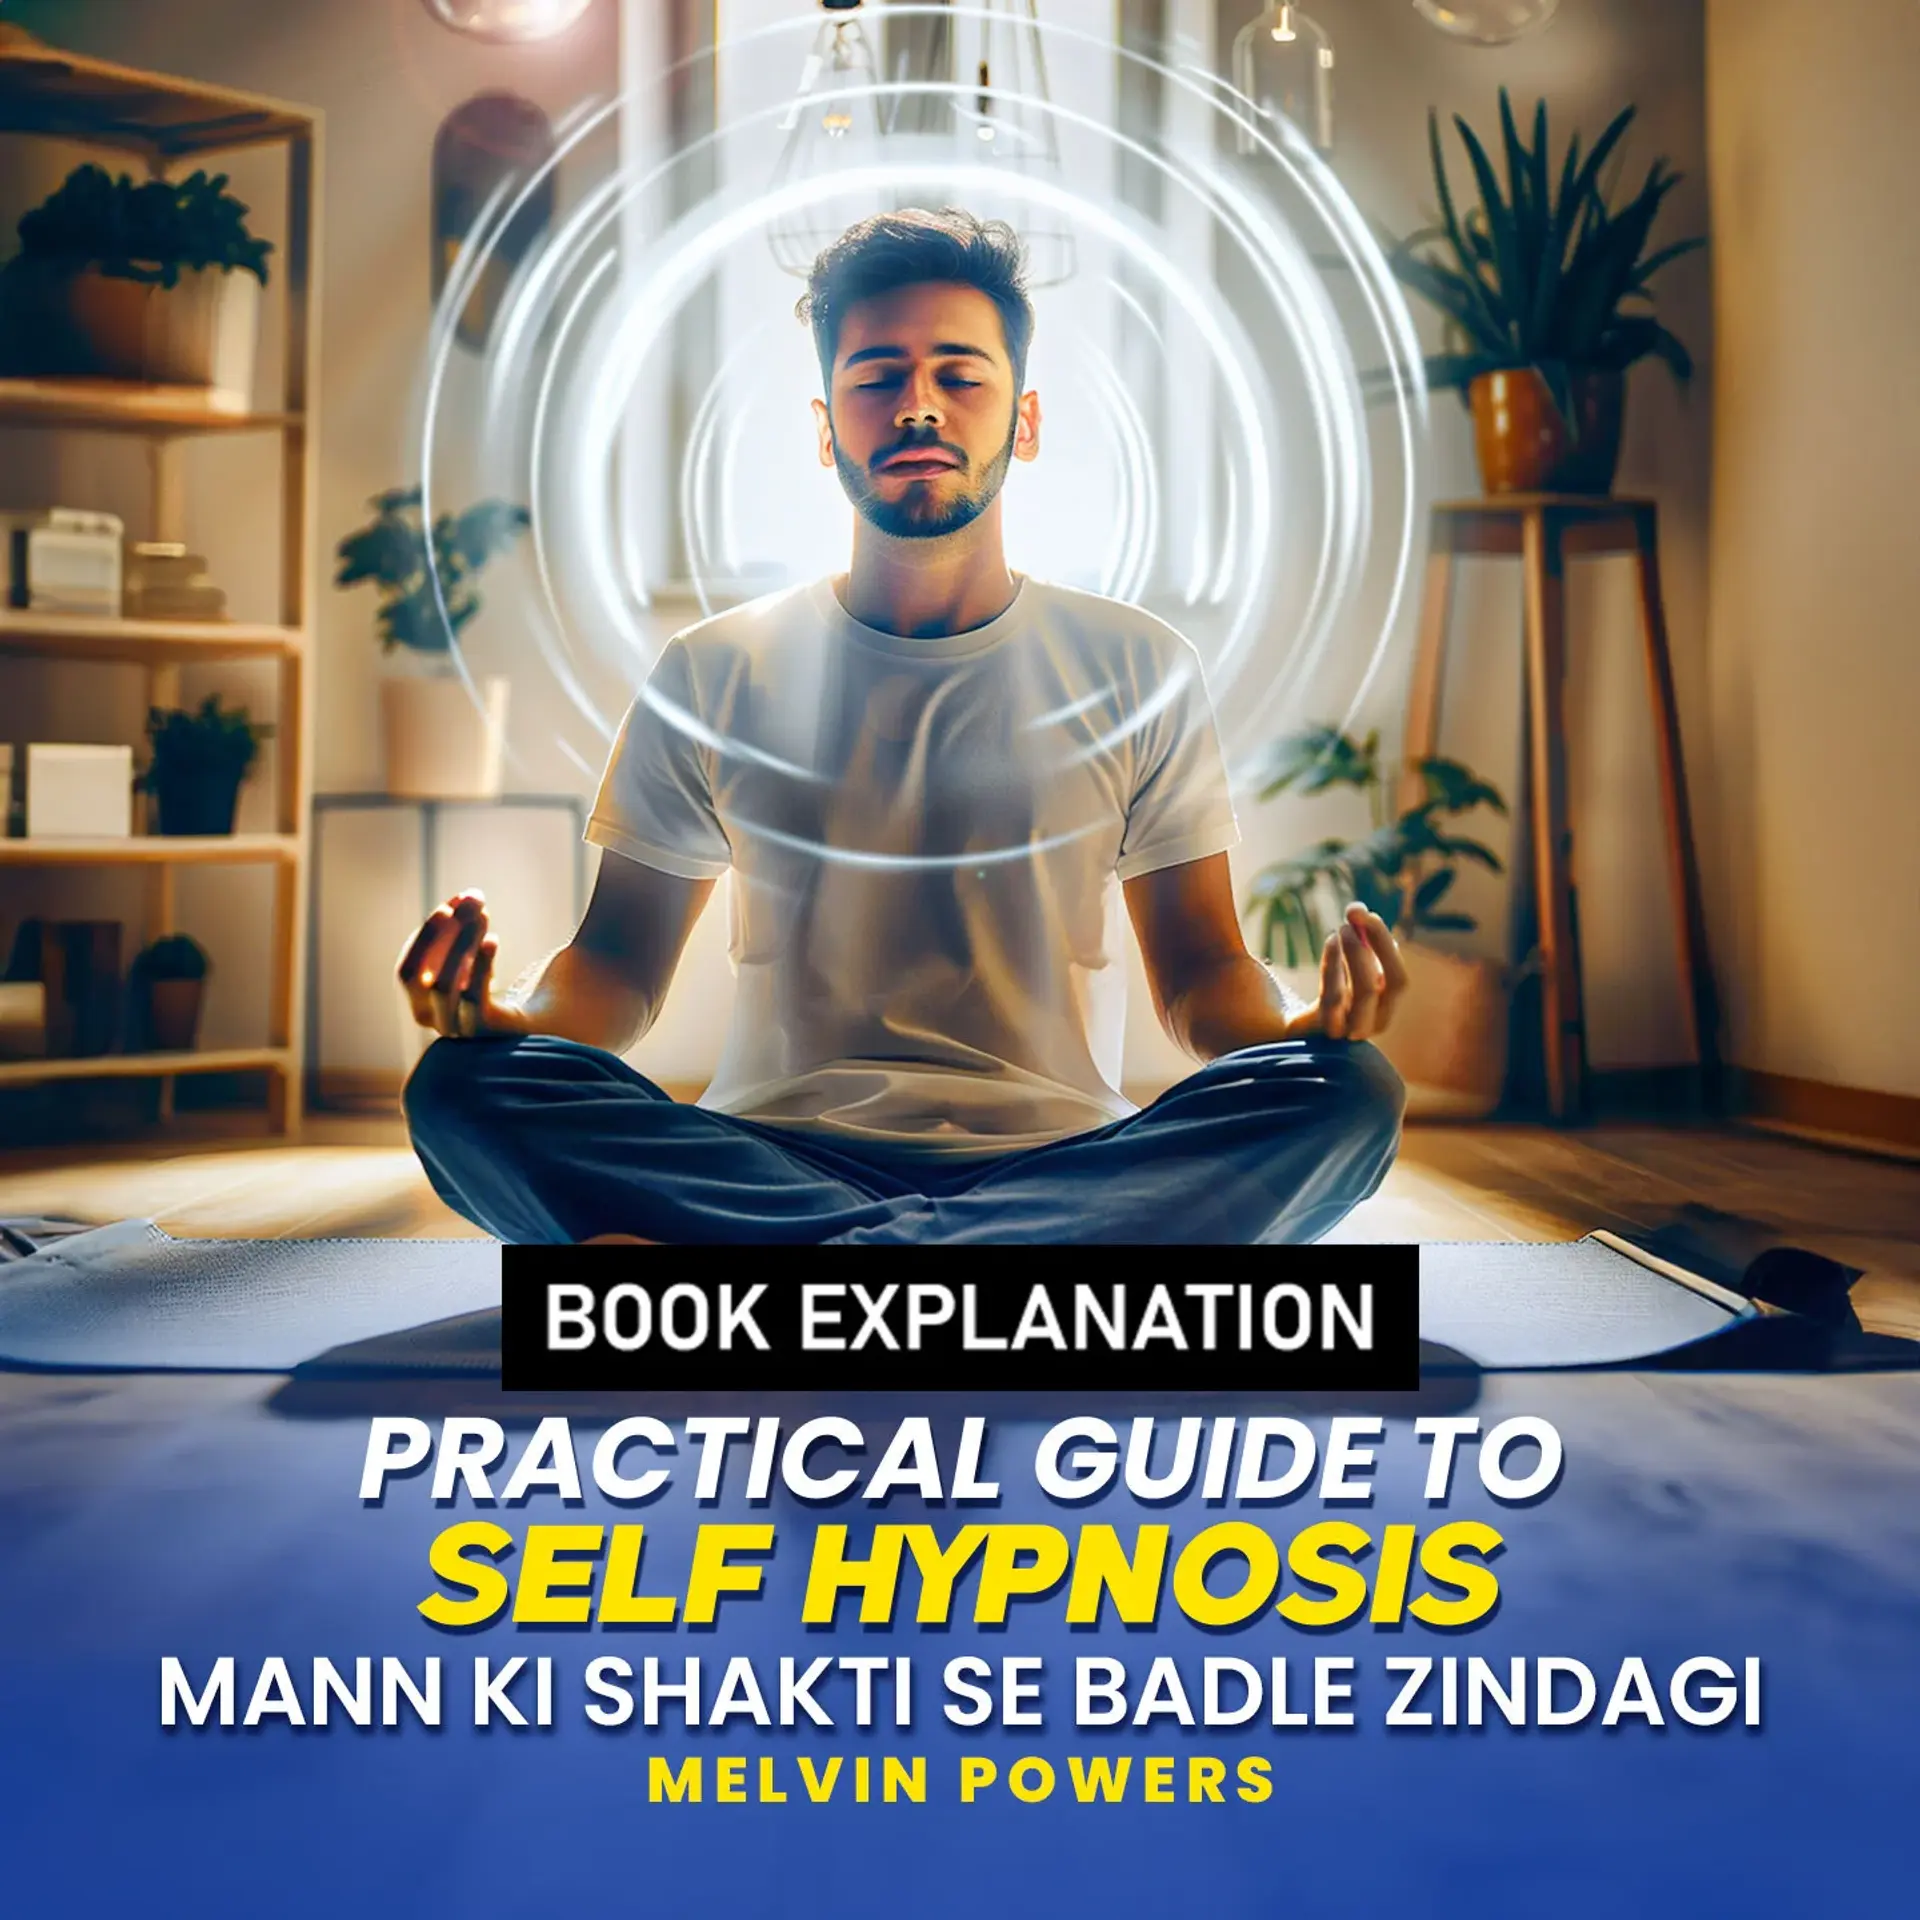 A Practical Guide to Self-Hypnosis - Mann Ki Shakti se Badle Zindagi  | 